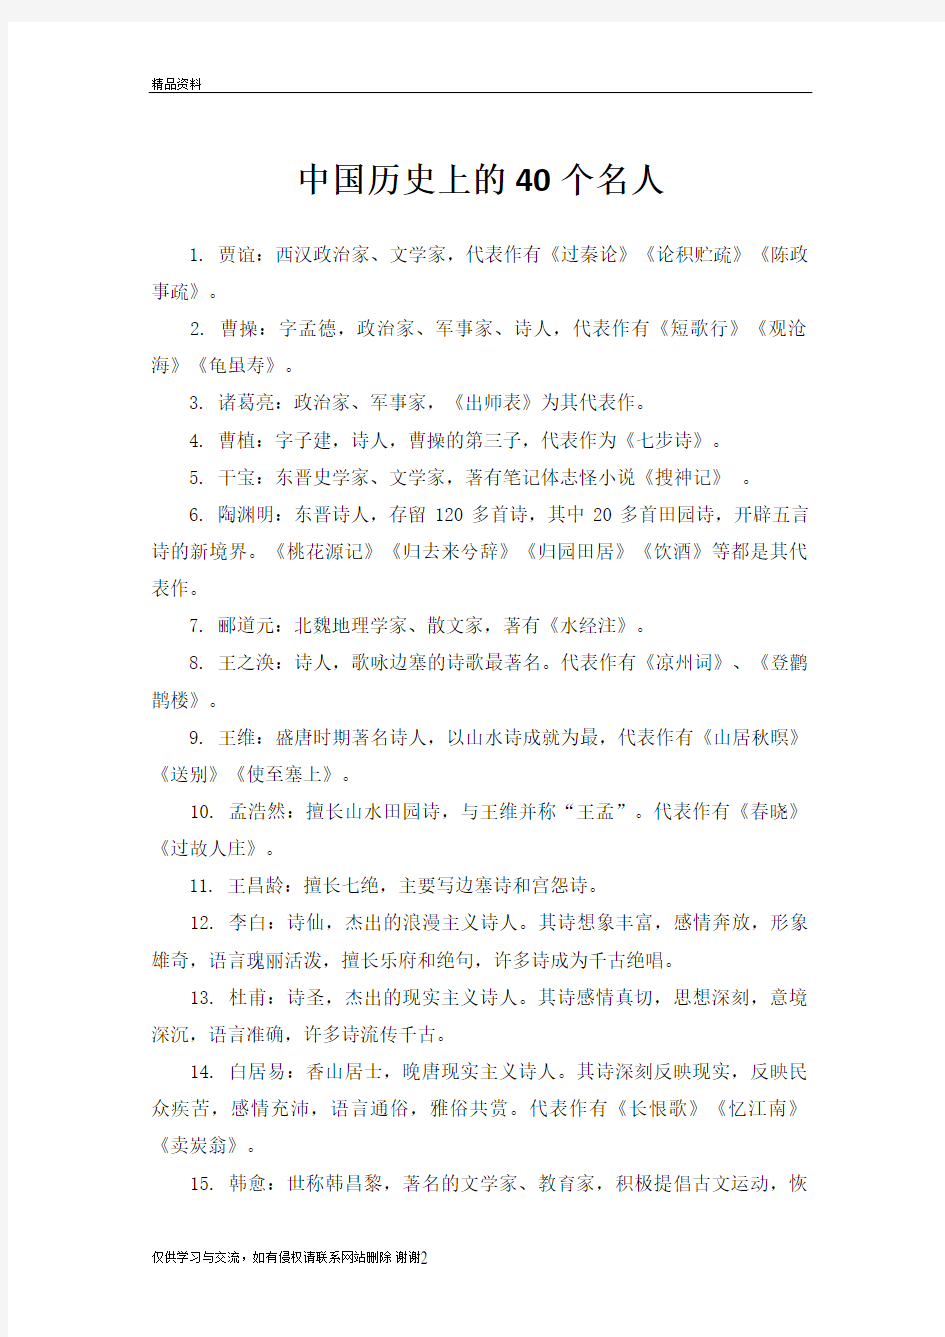 中国历史上的40个名人教学内容